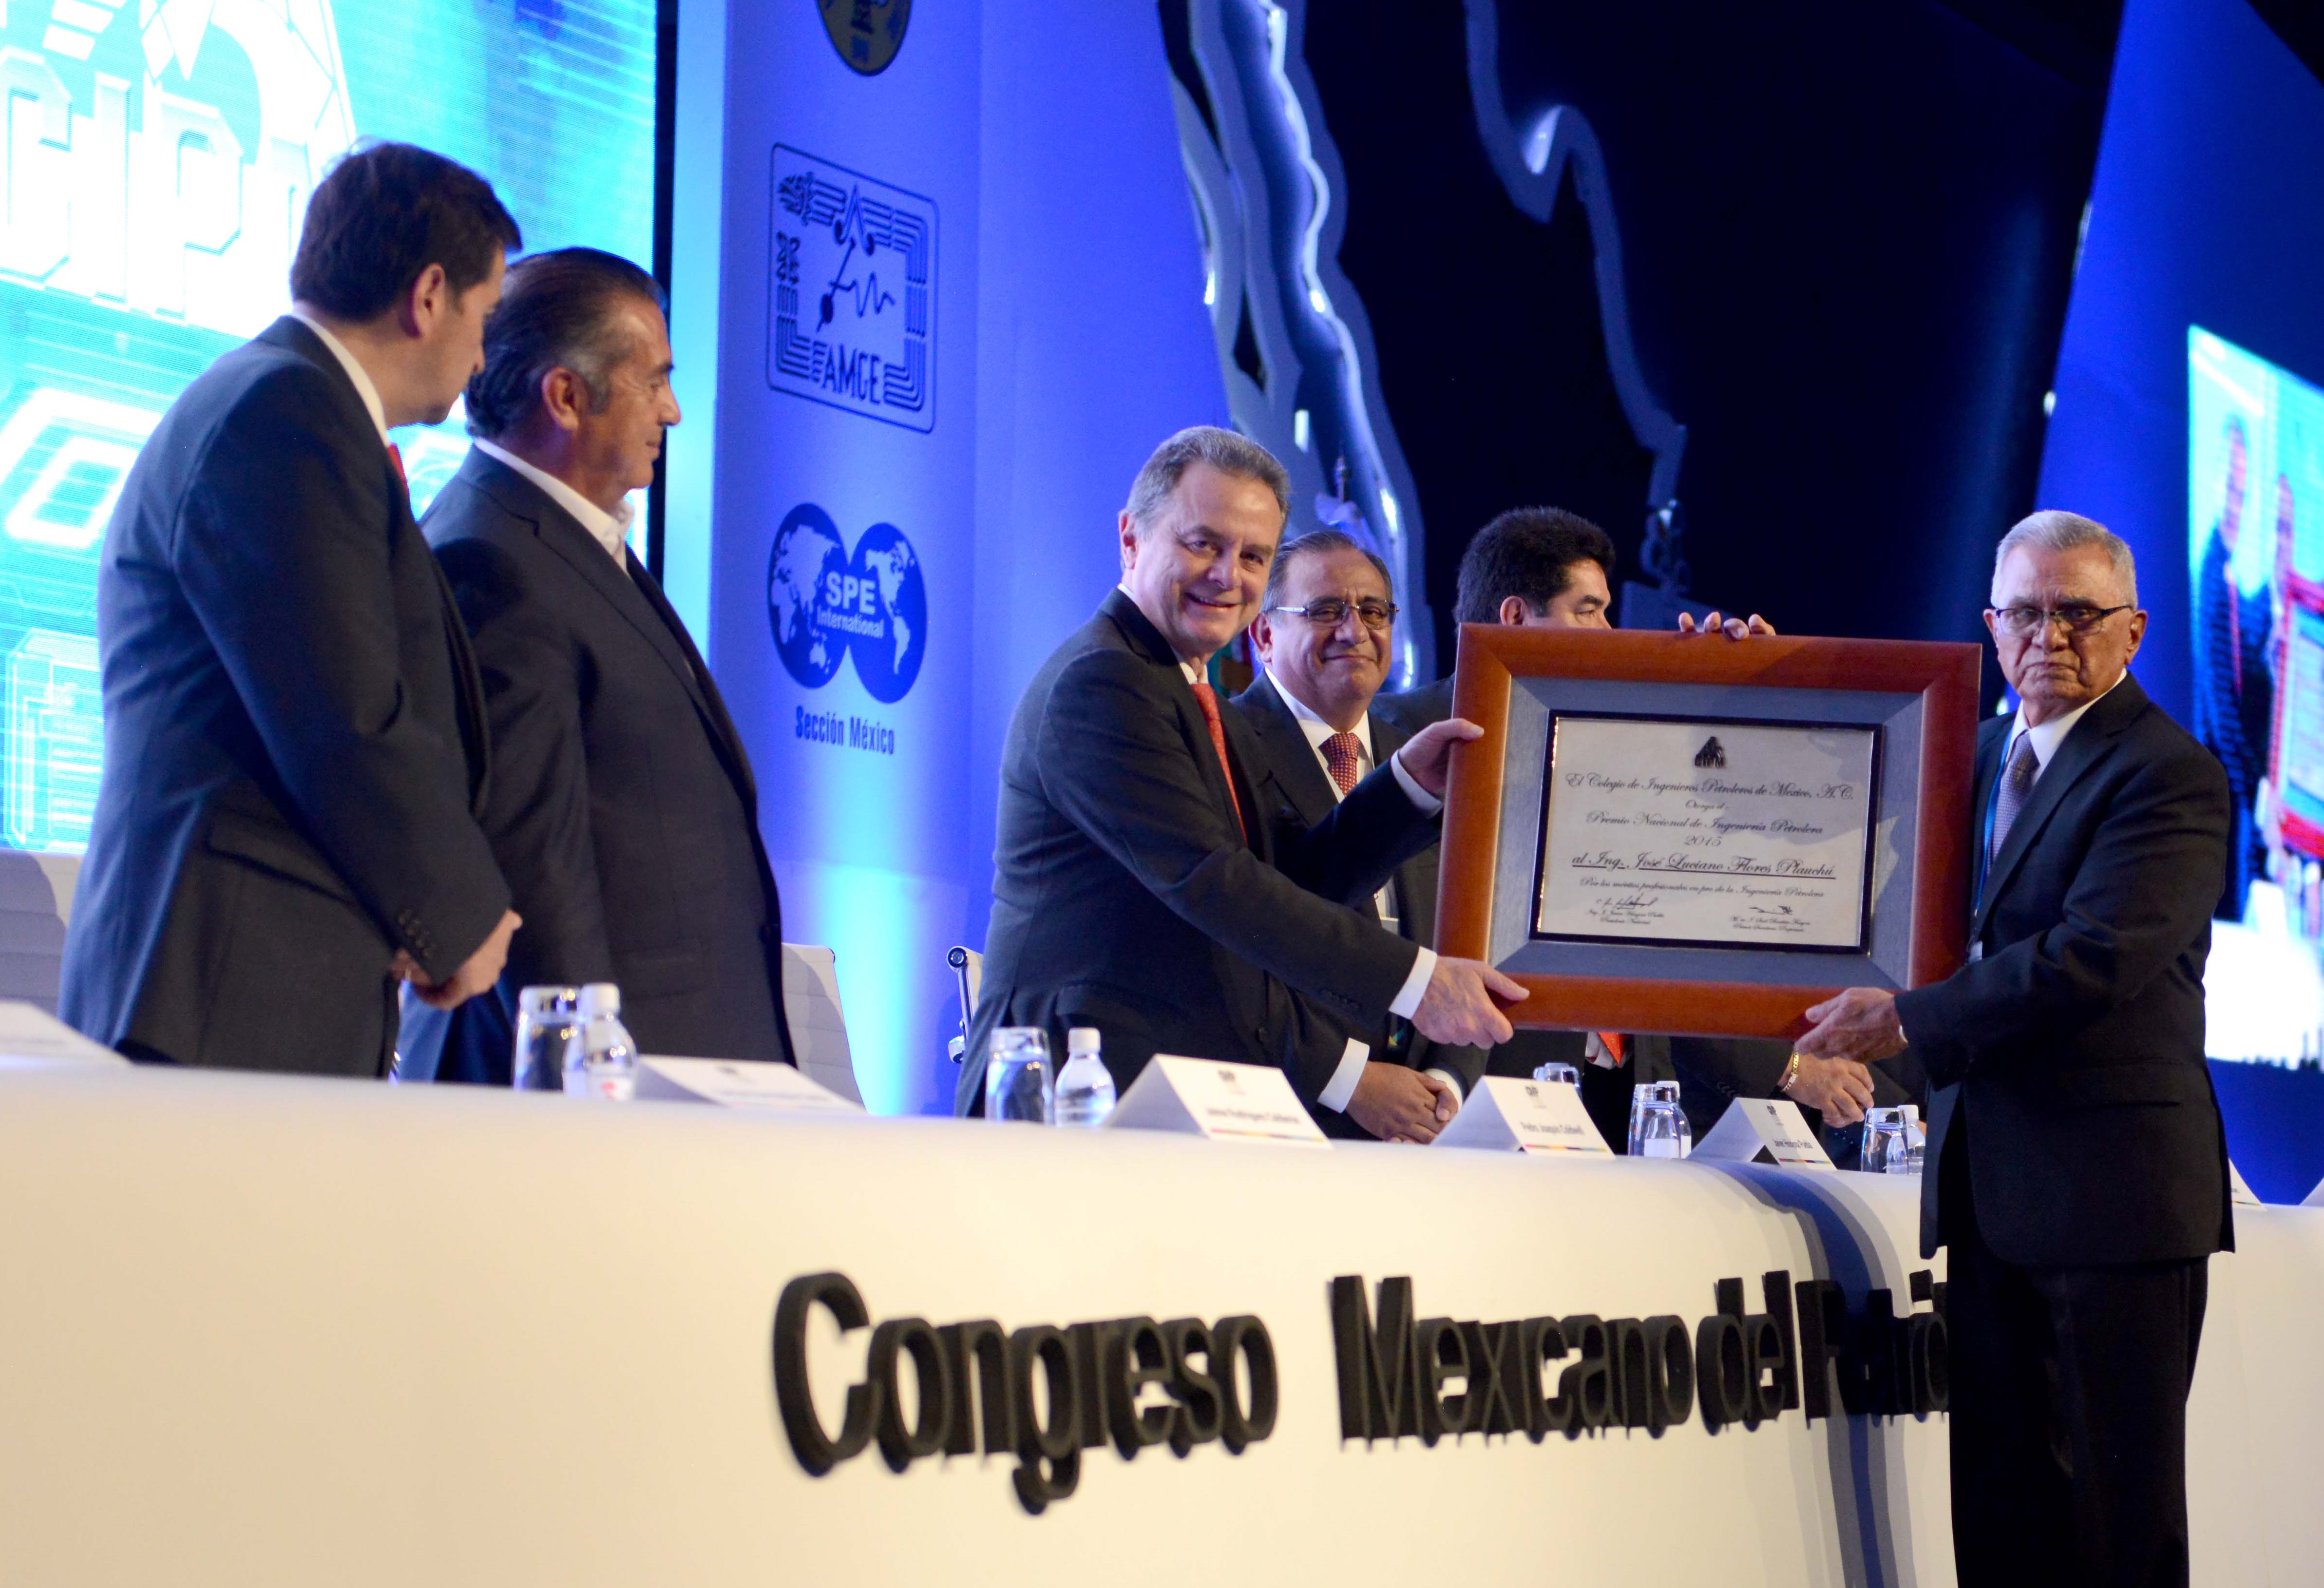 El Secretario de Energía, Licenciado Pedro Joaquín Coldwell, encabezó la inauguración del Congreso Mexicano de Petróleo 2016, estuvo acompañado del Gobernador de Nuevo León, Jaime Rodríguez Calderón.